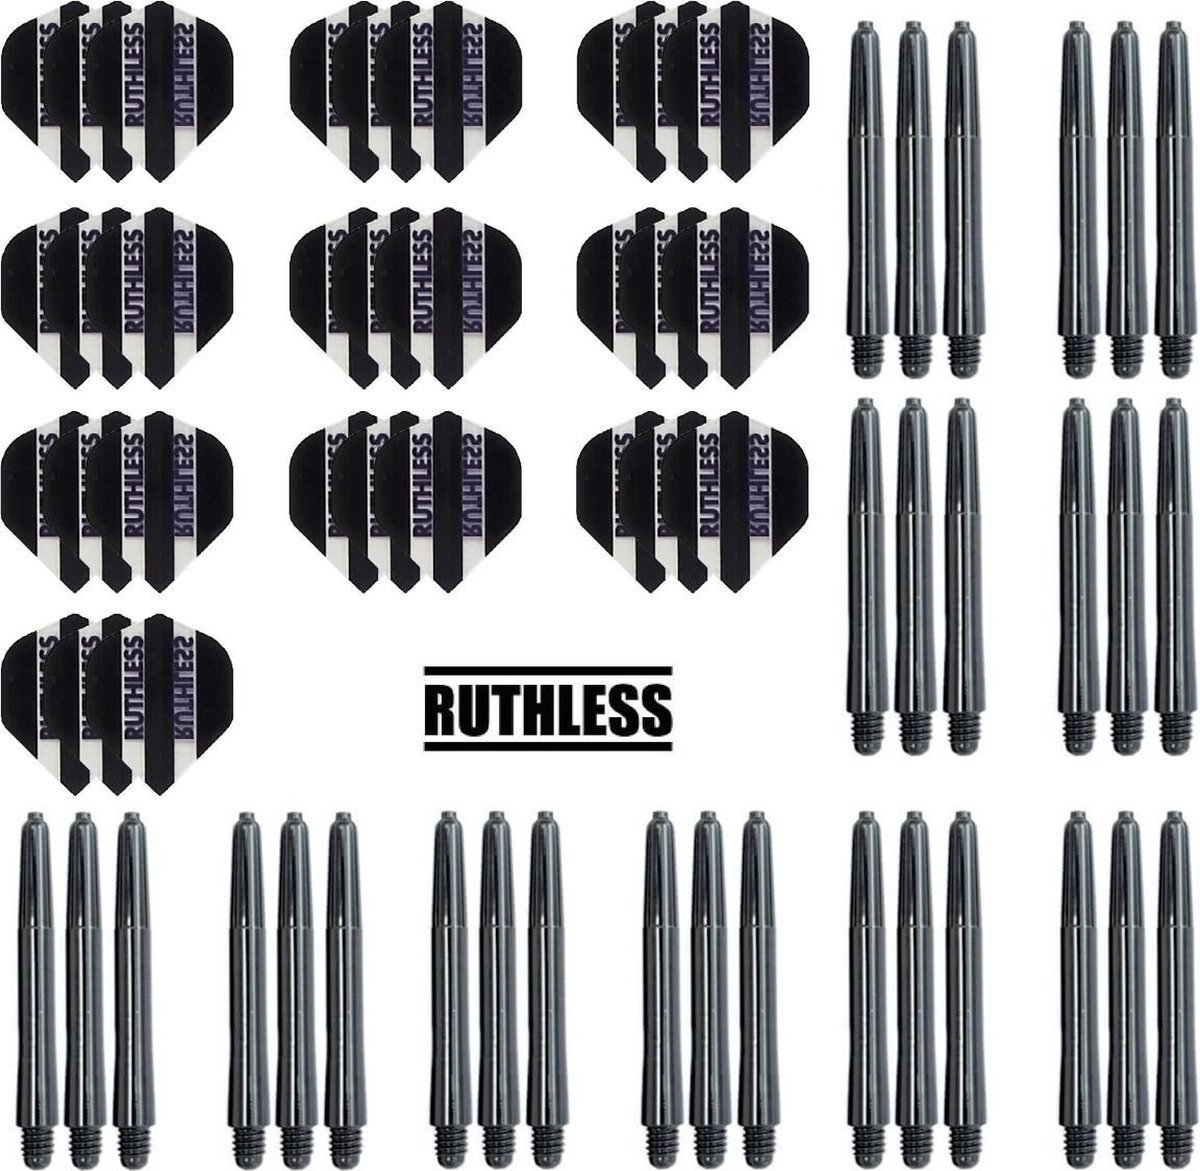 10 Sets Ruthless Flights Zwart – plus 10 sets dart shafts – inbetween